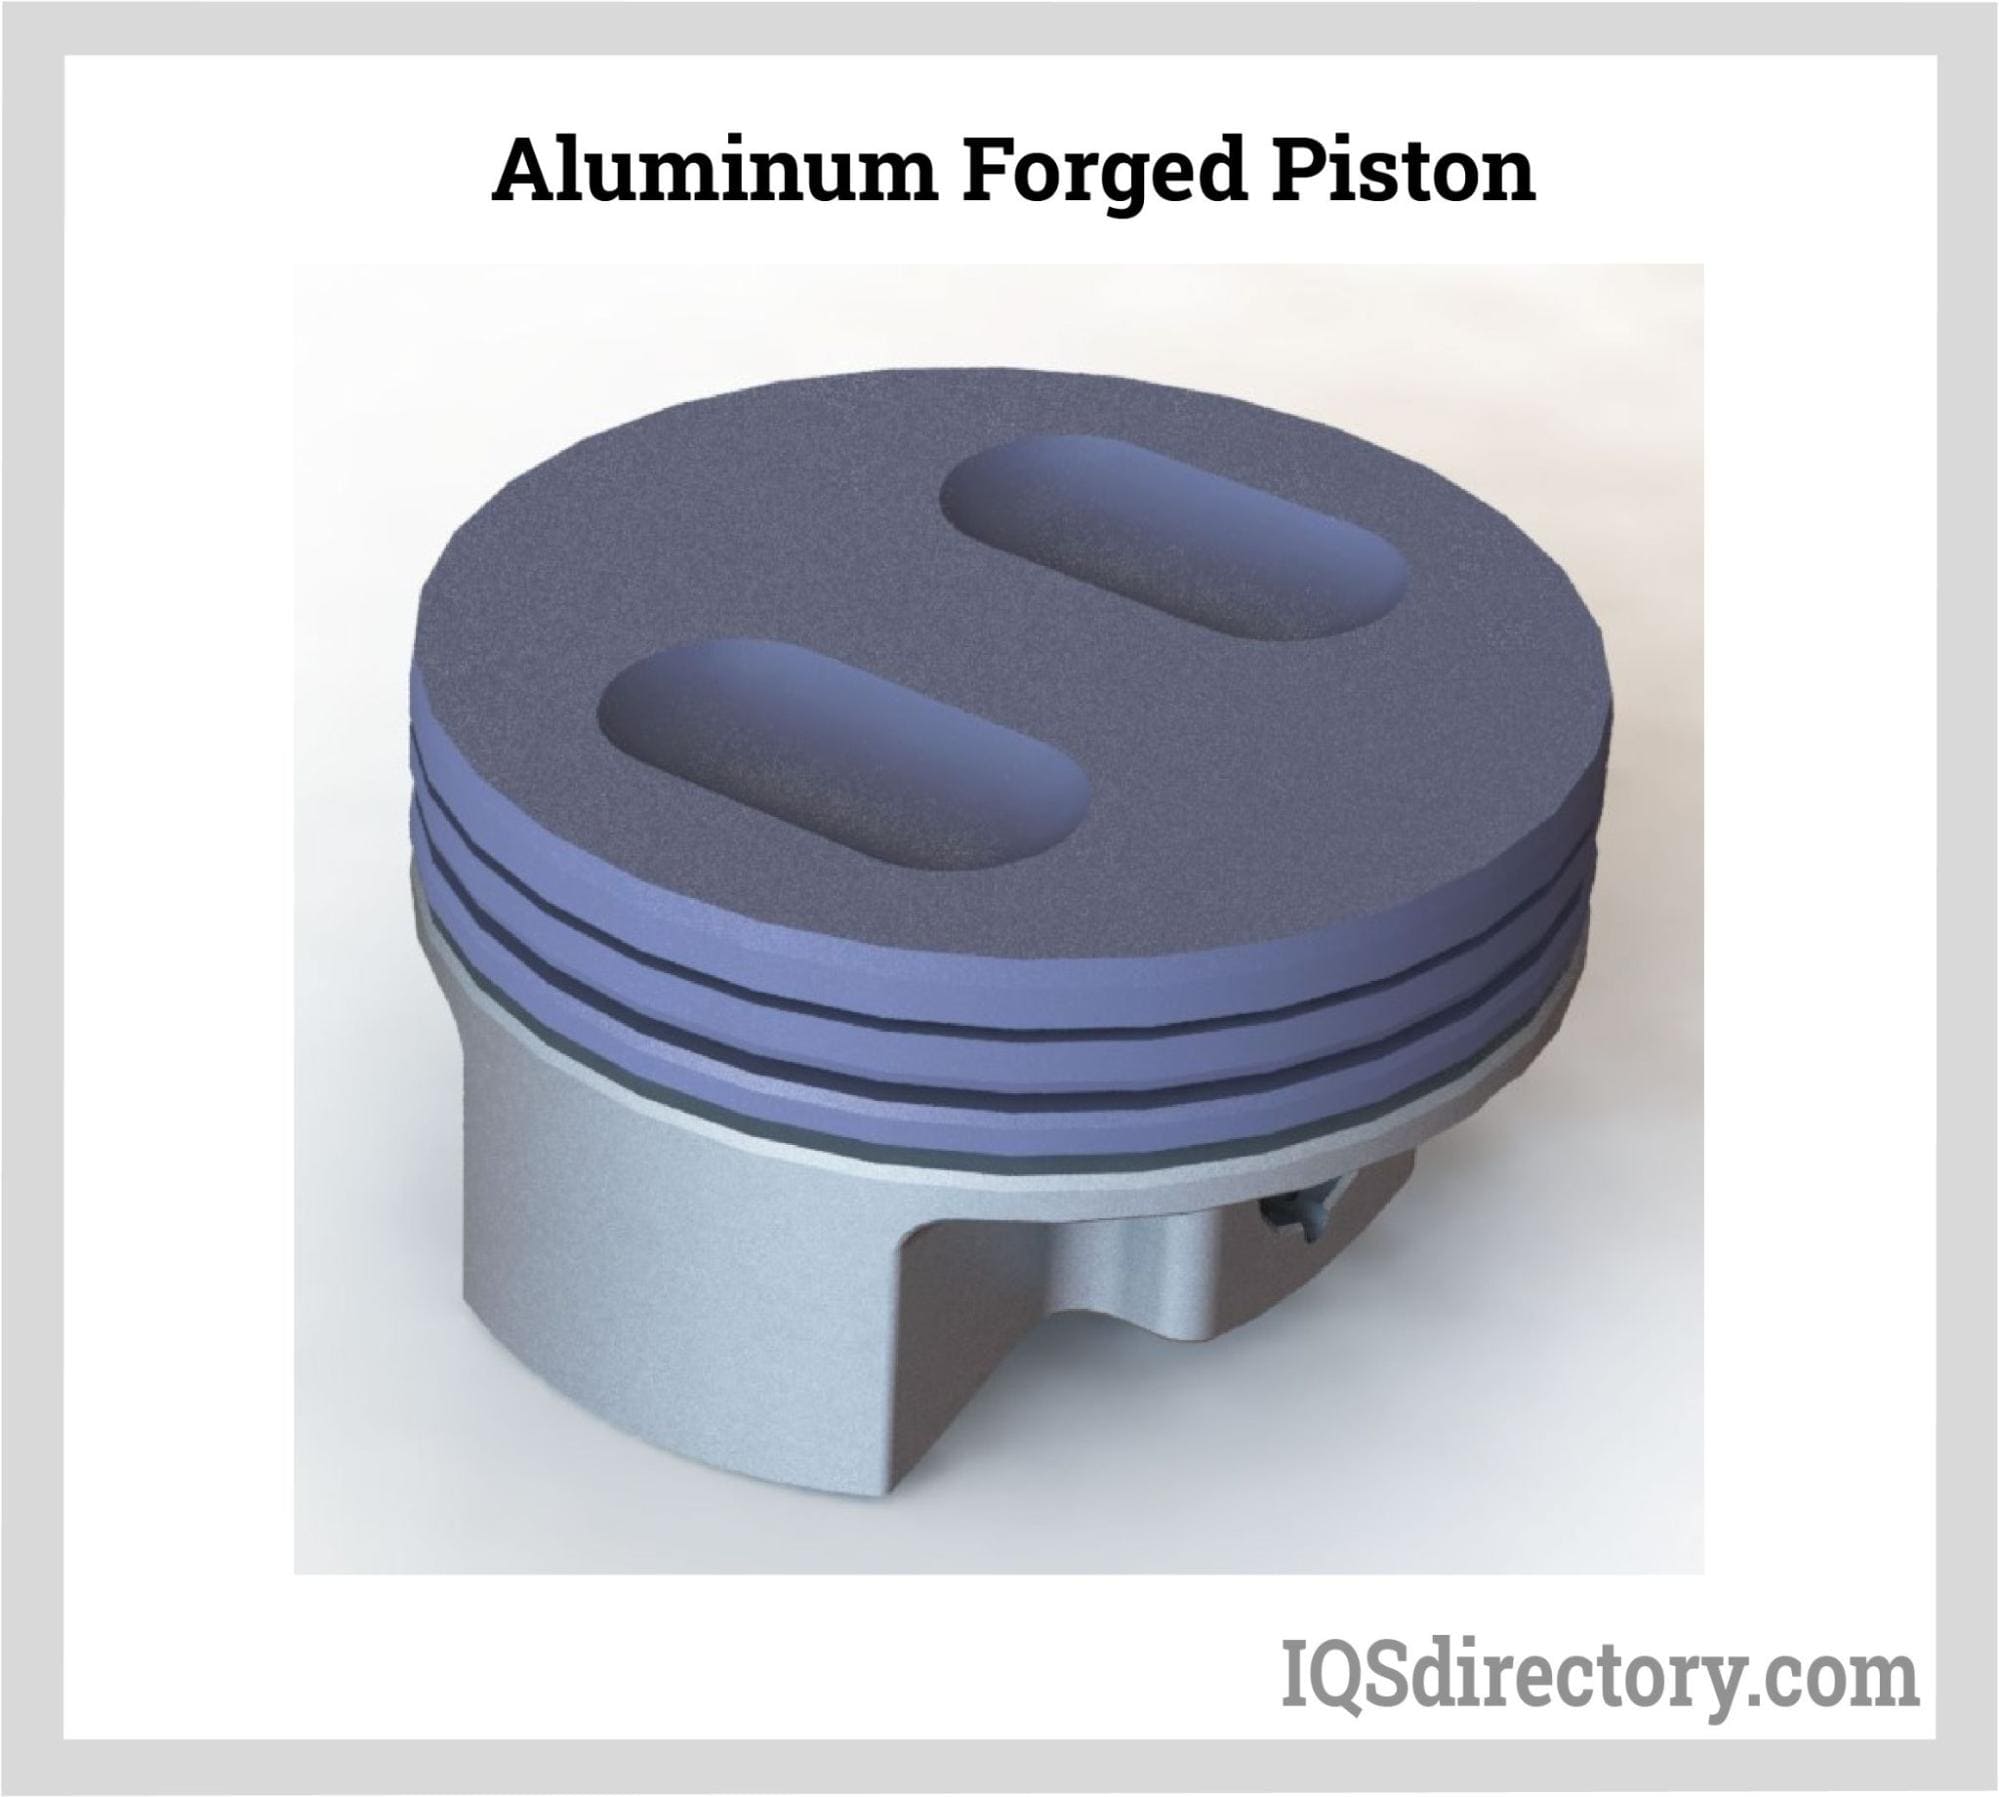 Aluminum Forged Piston